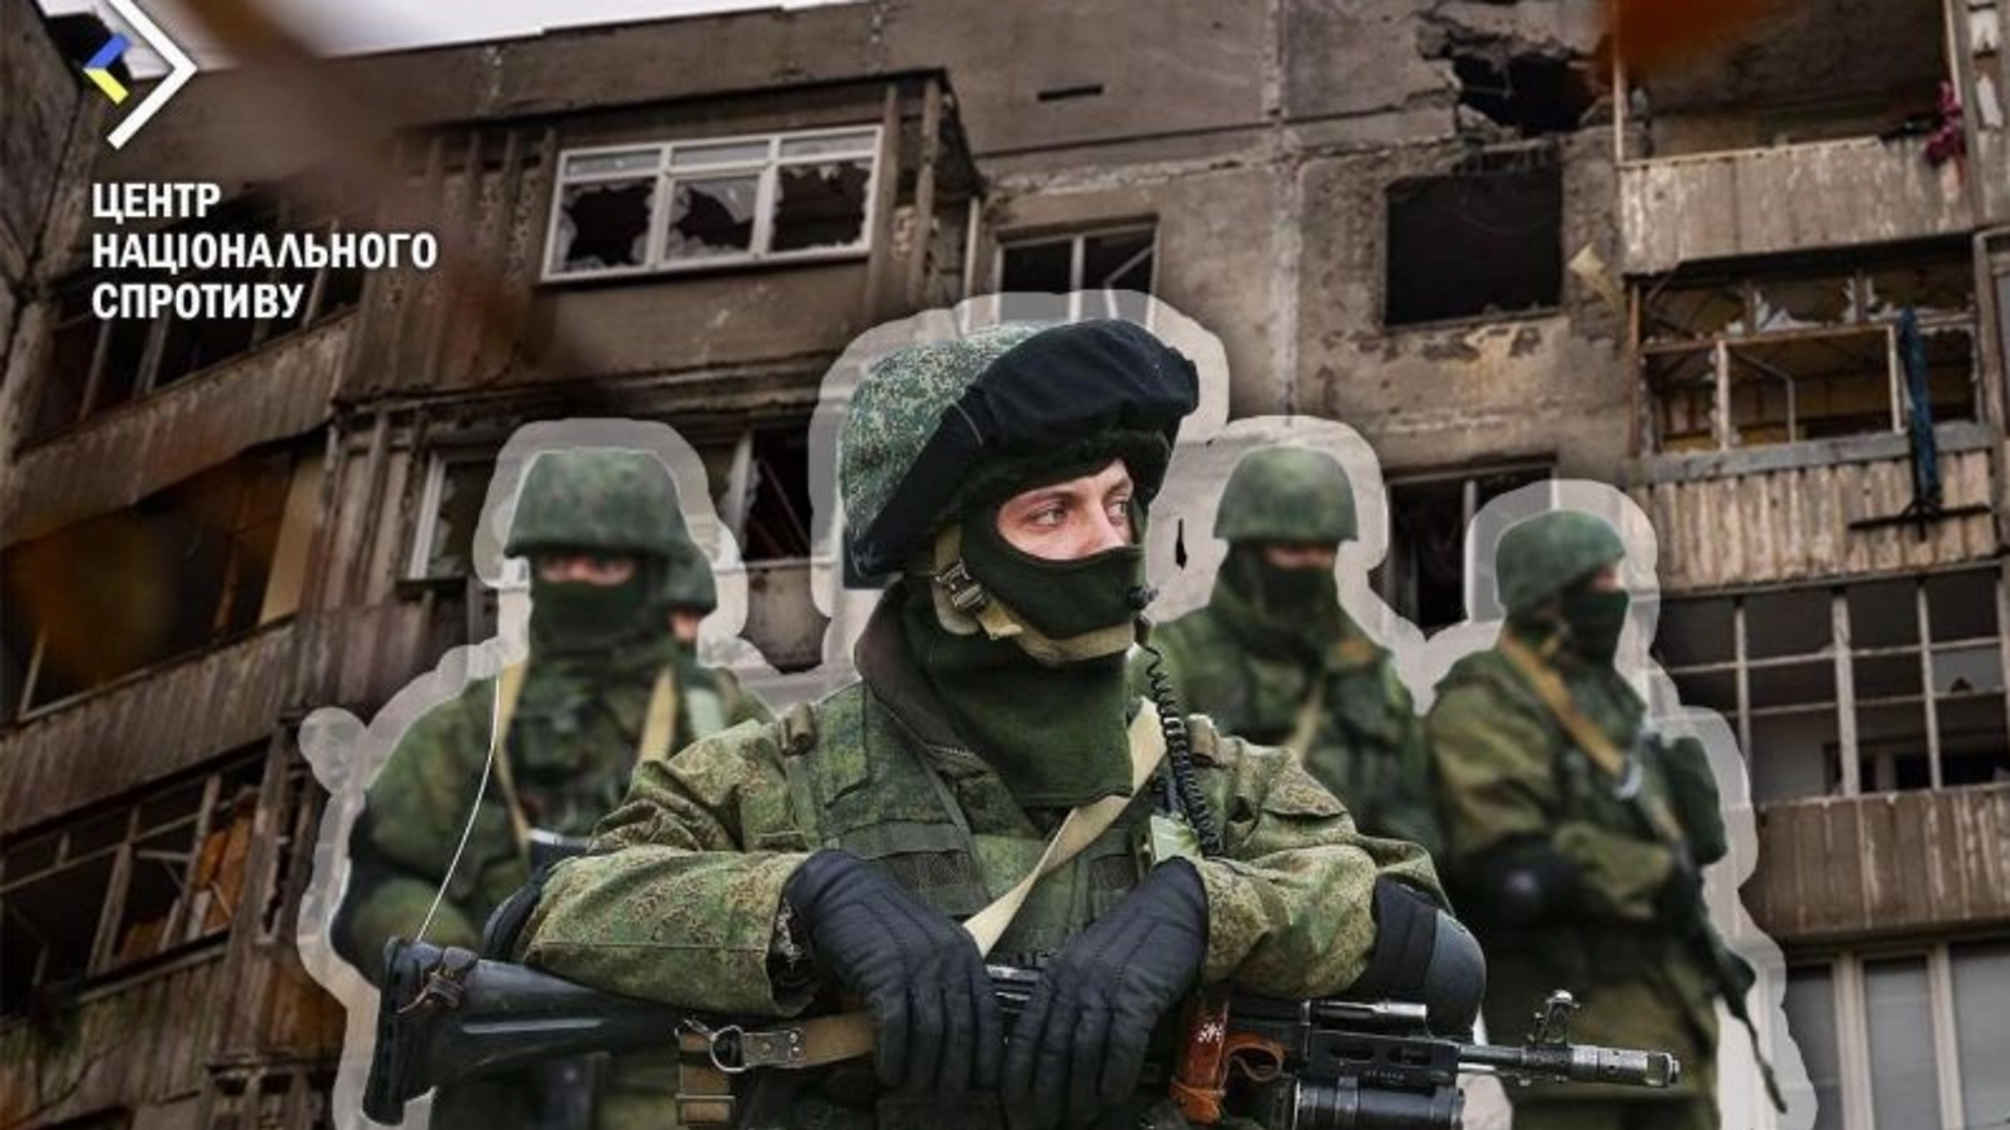 Россияне отбирают недвижимость у украинцев на оккупированных территориях, - Центр нацсопротивления